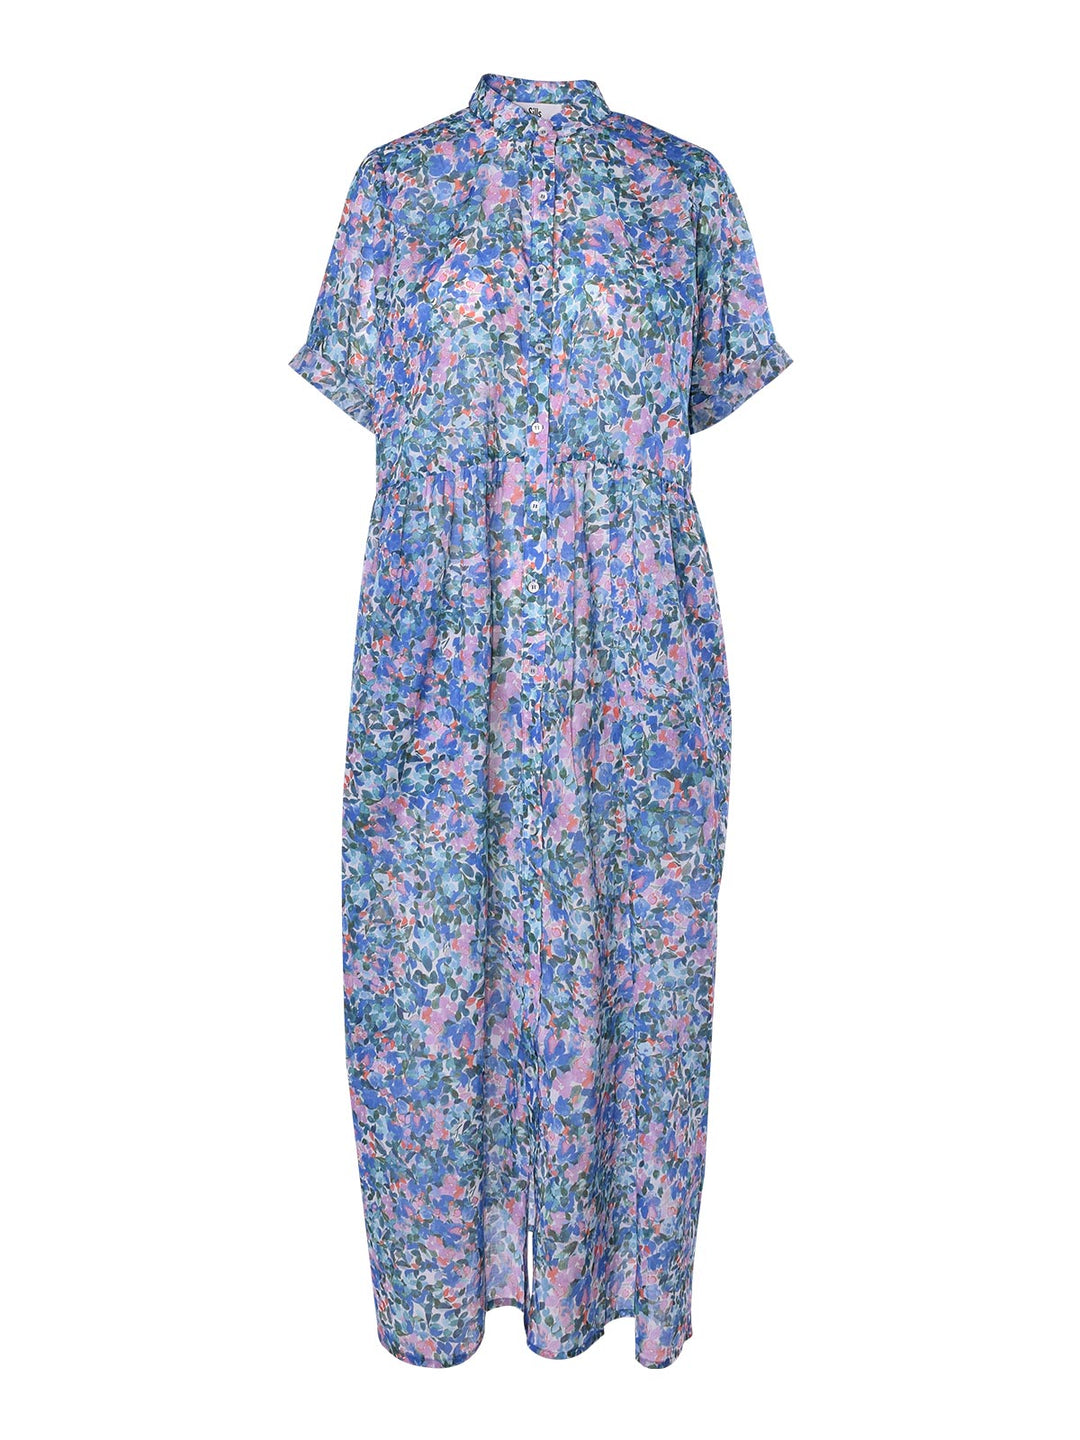 Claudette Floral Dress (Blue Multi)